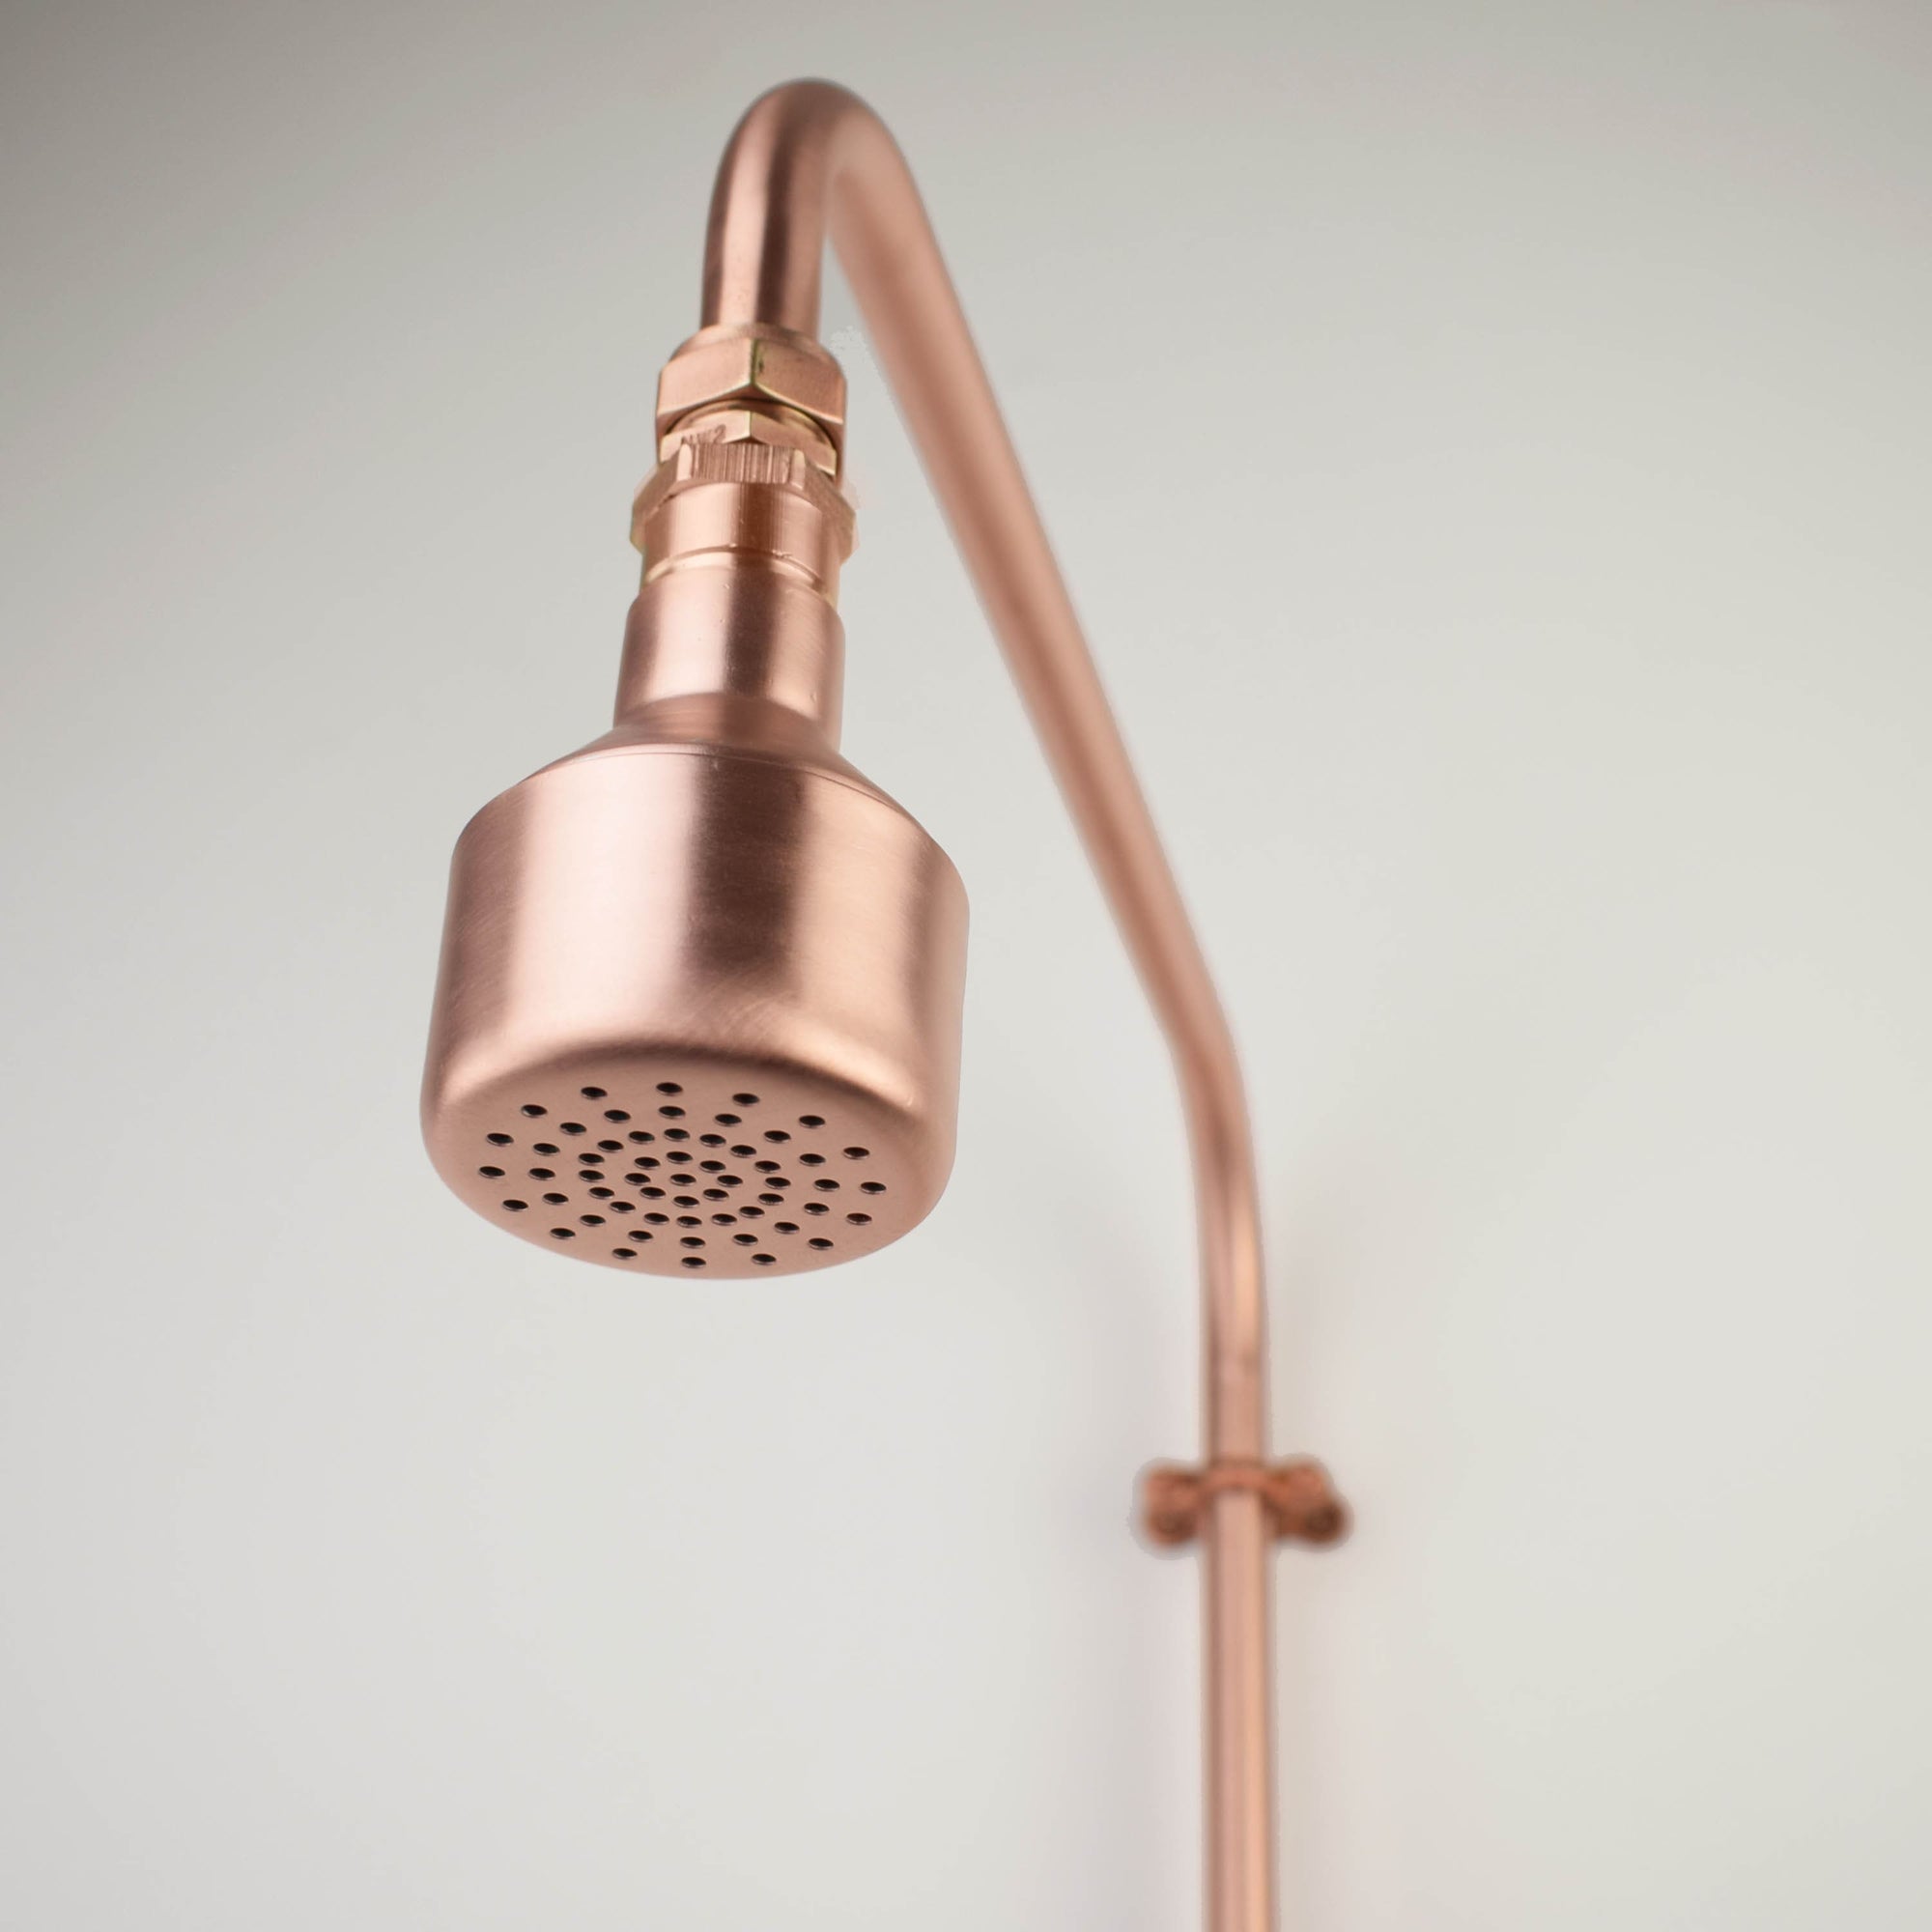 Copper Shower Head - Bulb by Proper Copper Design - Proper Copper Design custom